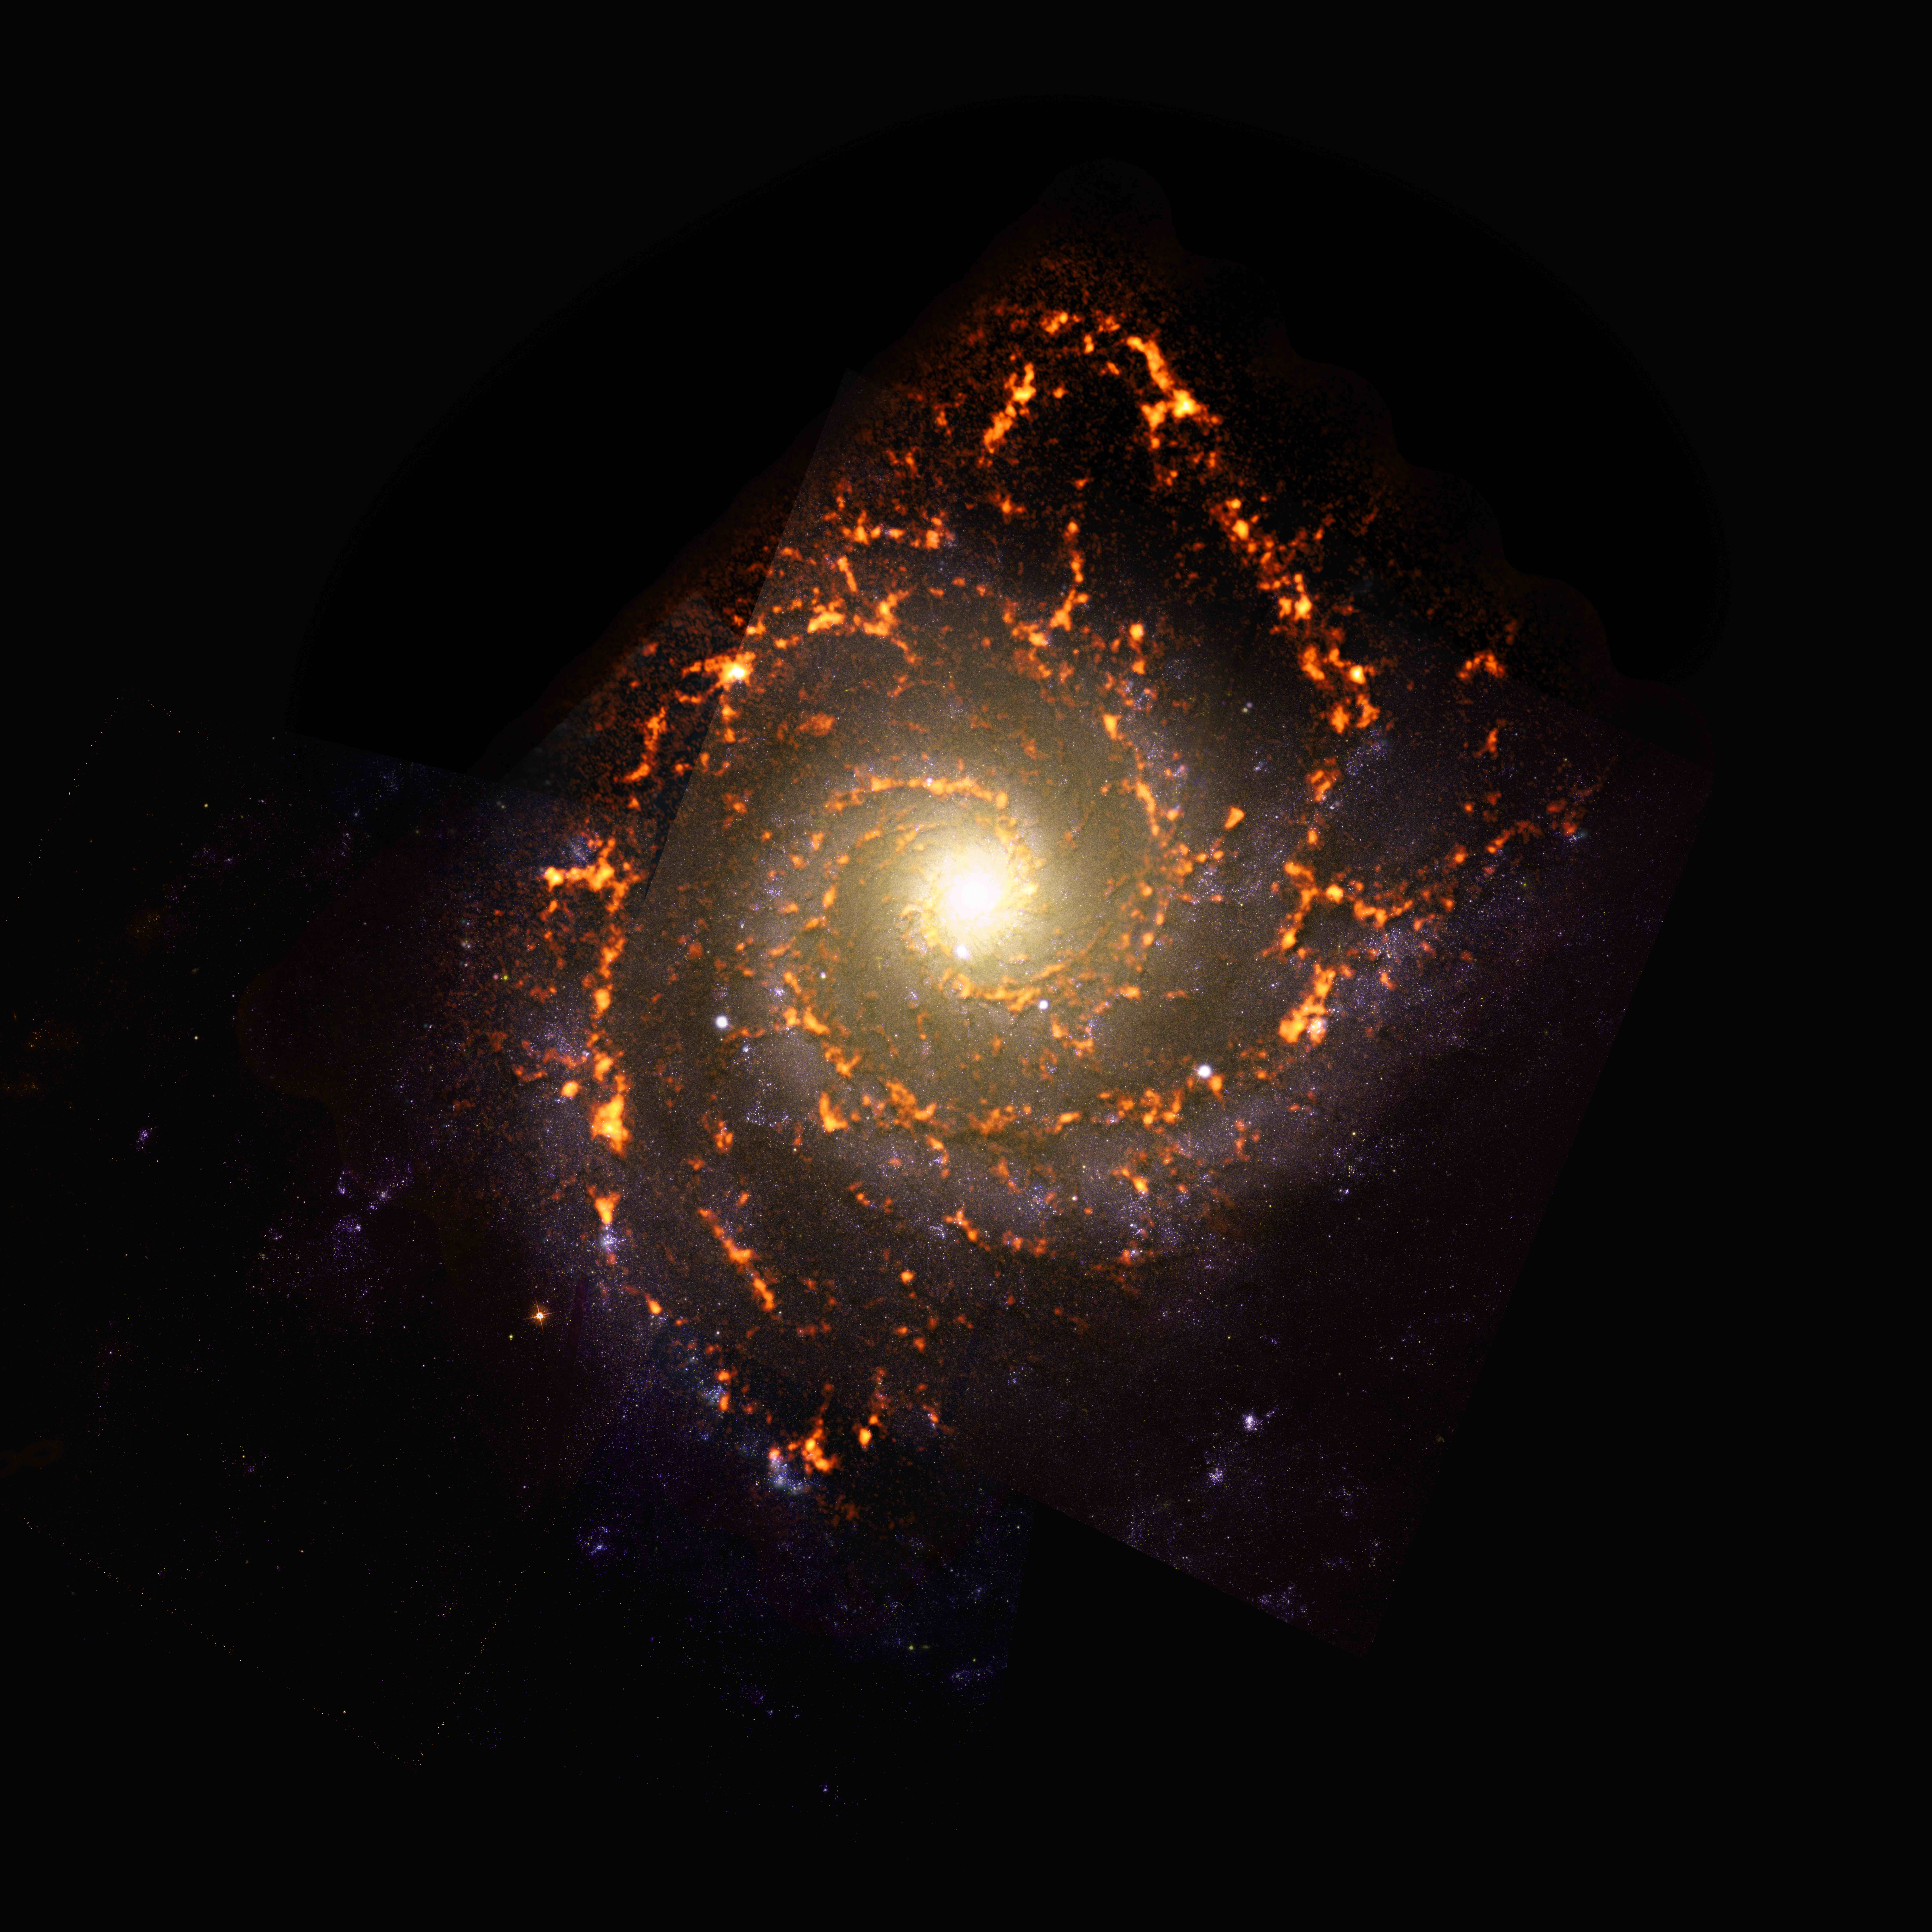 PHANGS-ALMA Survey: NGC0628